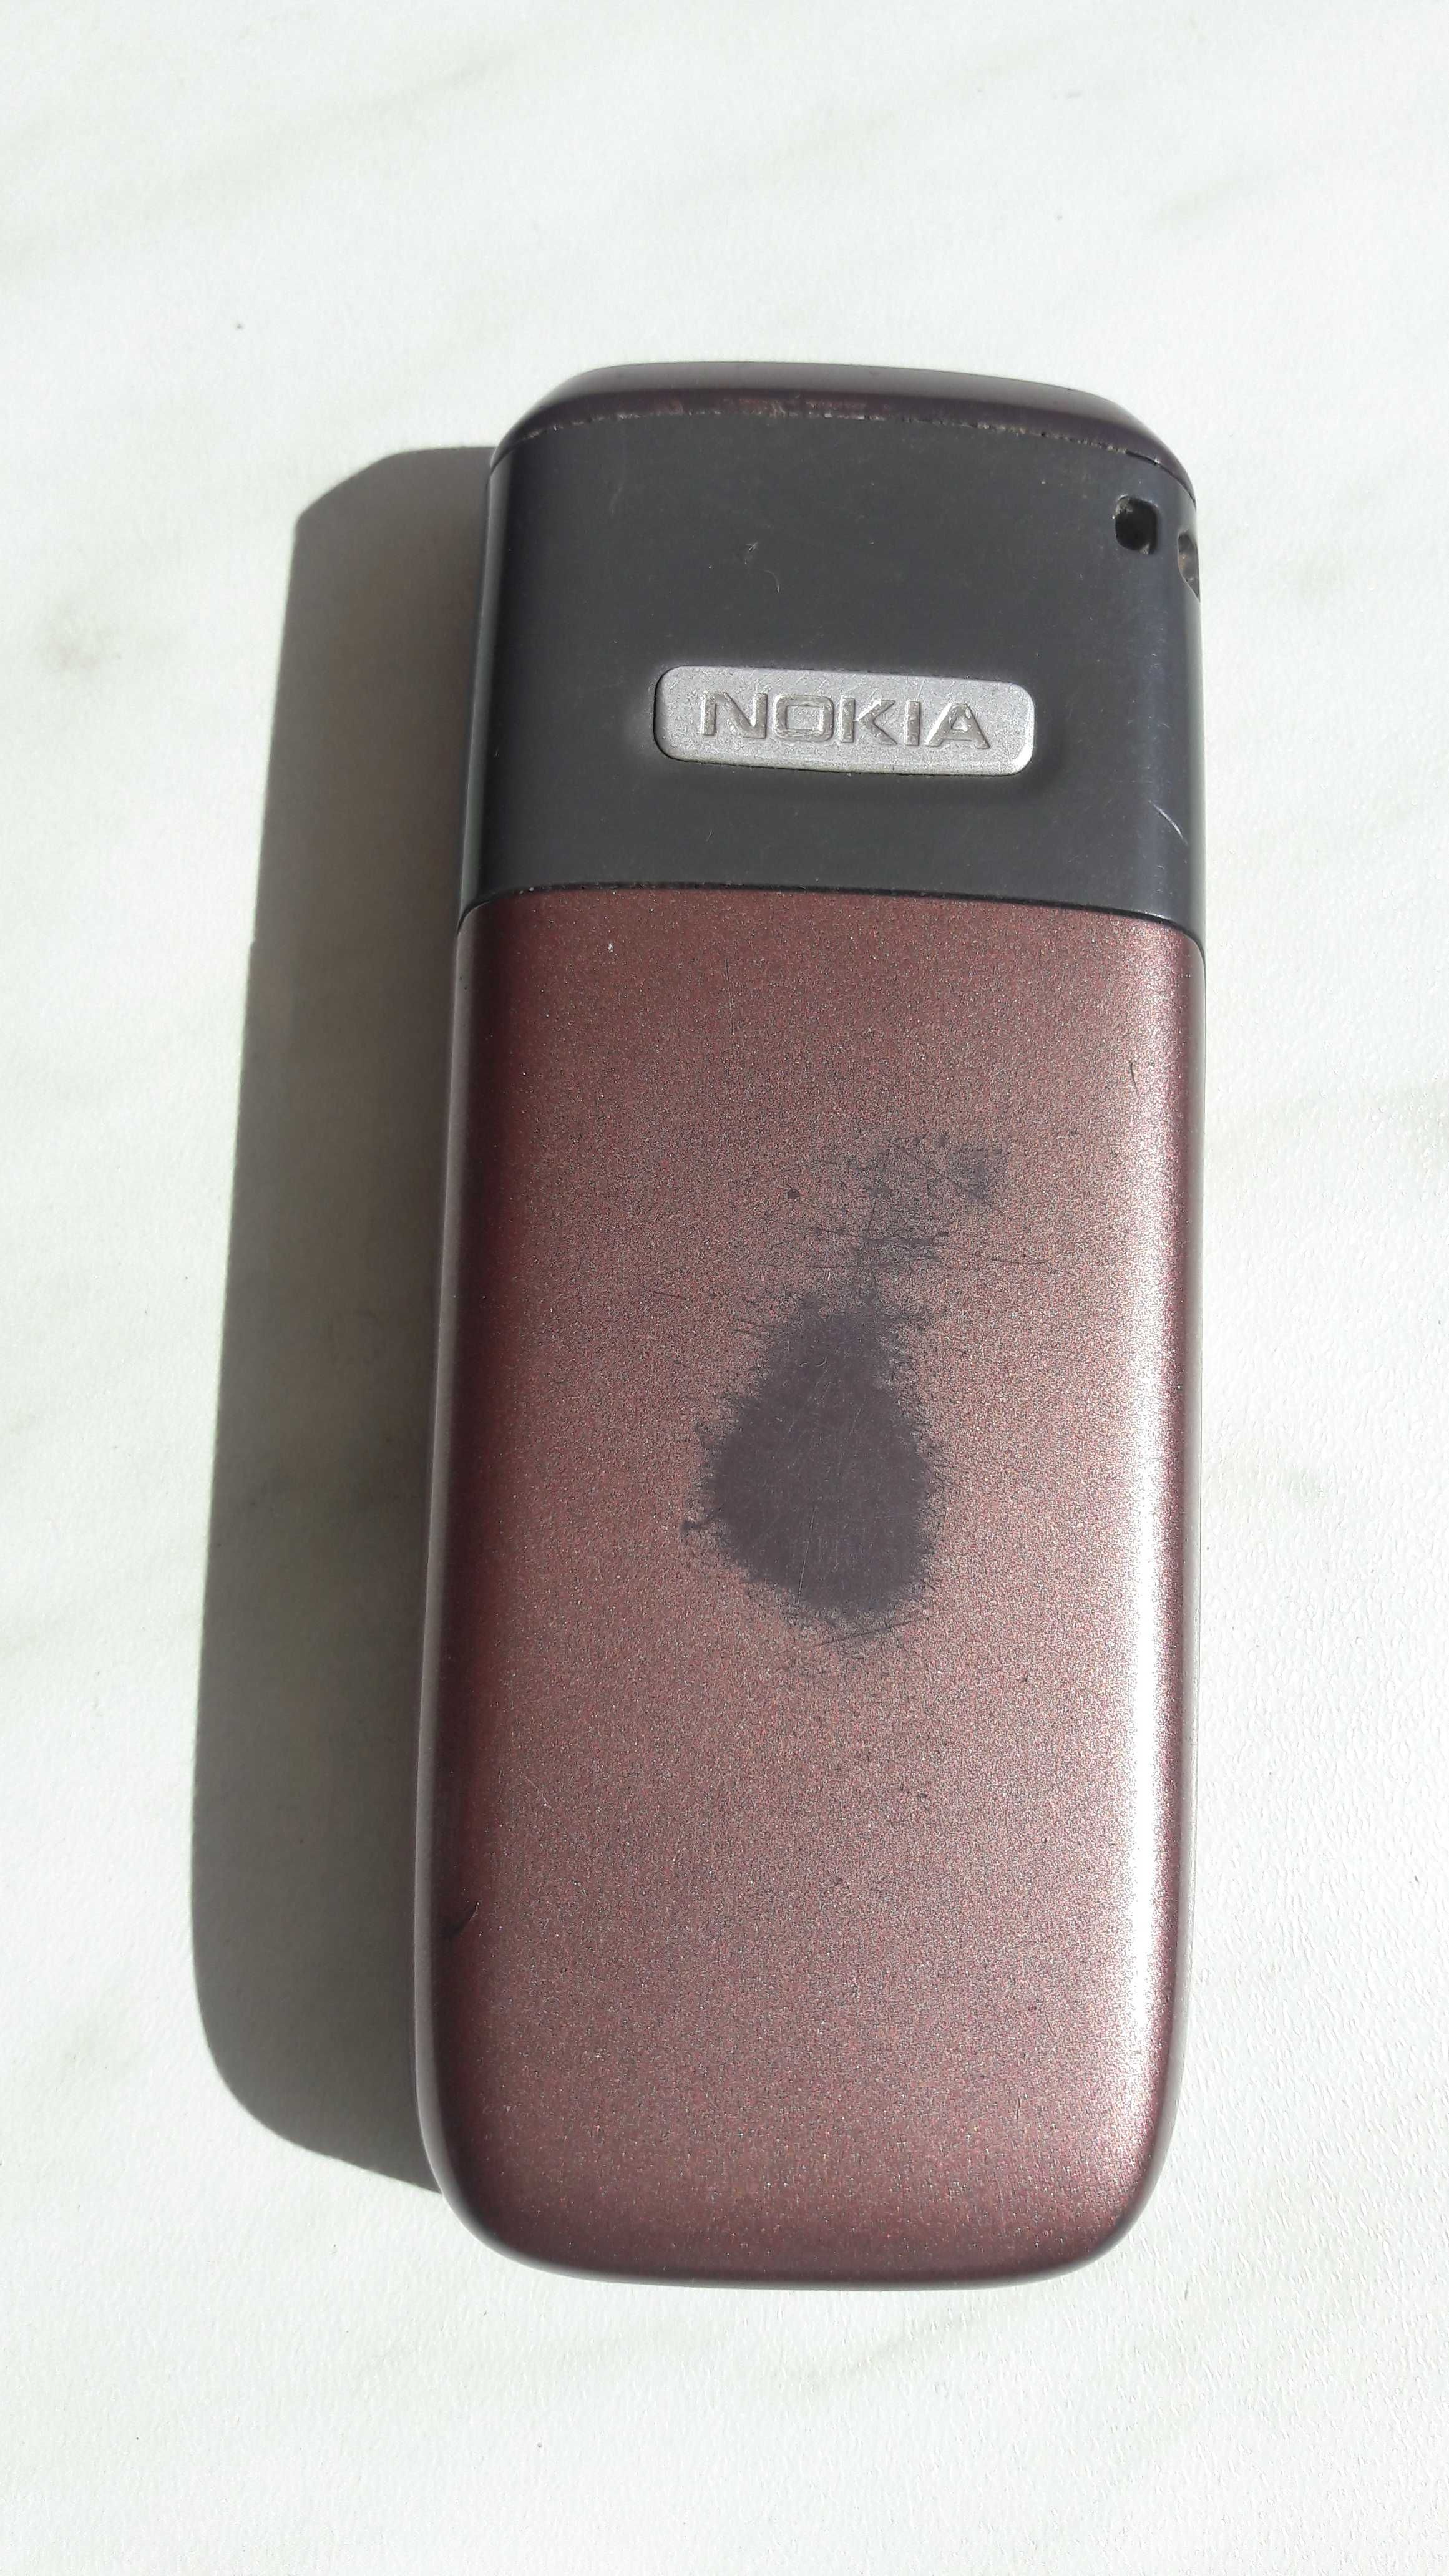 Мобильный телефон Nokia 2610 Nokia X3-02